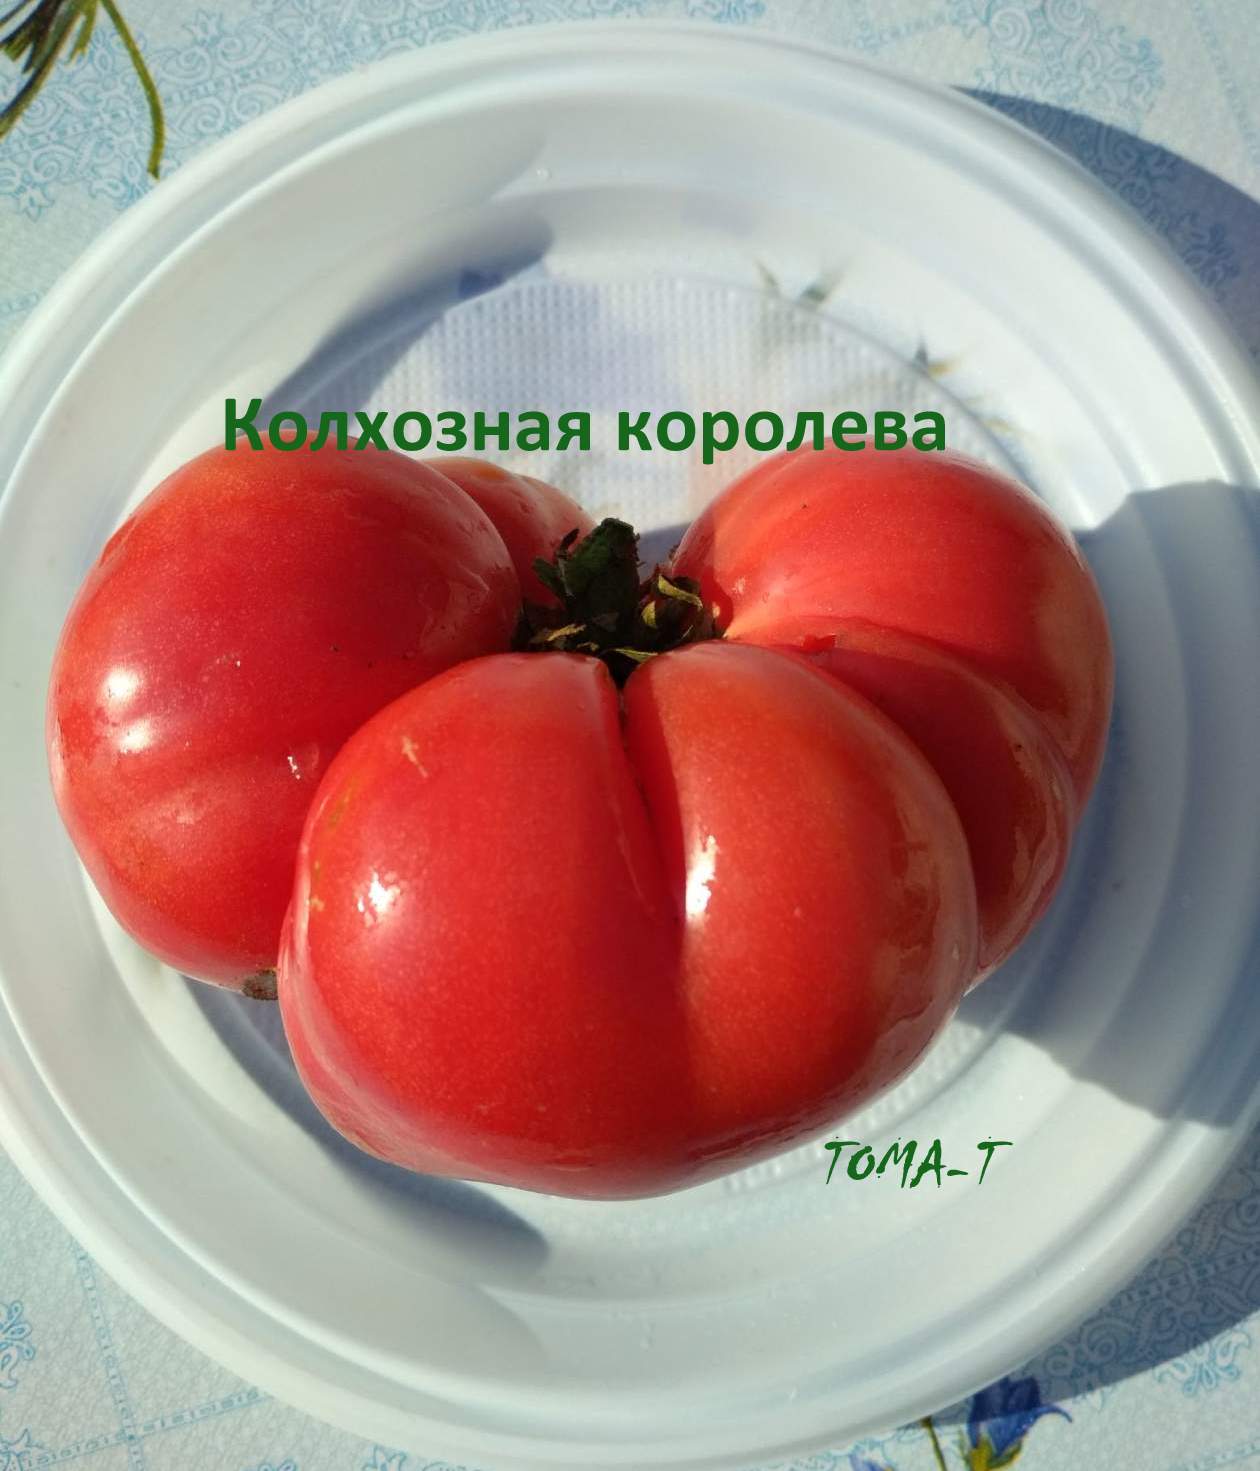 Колхозная Королева томат помидор